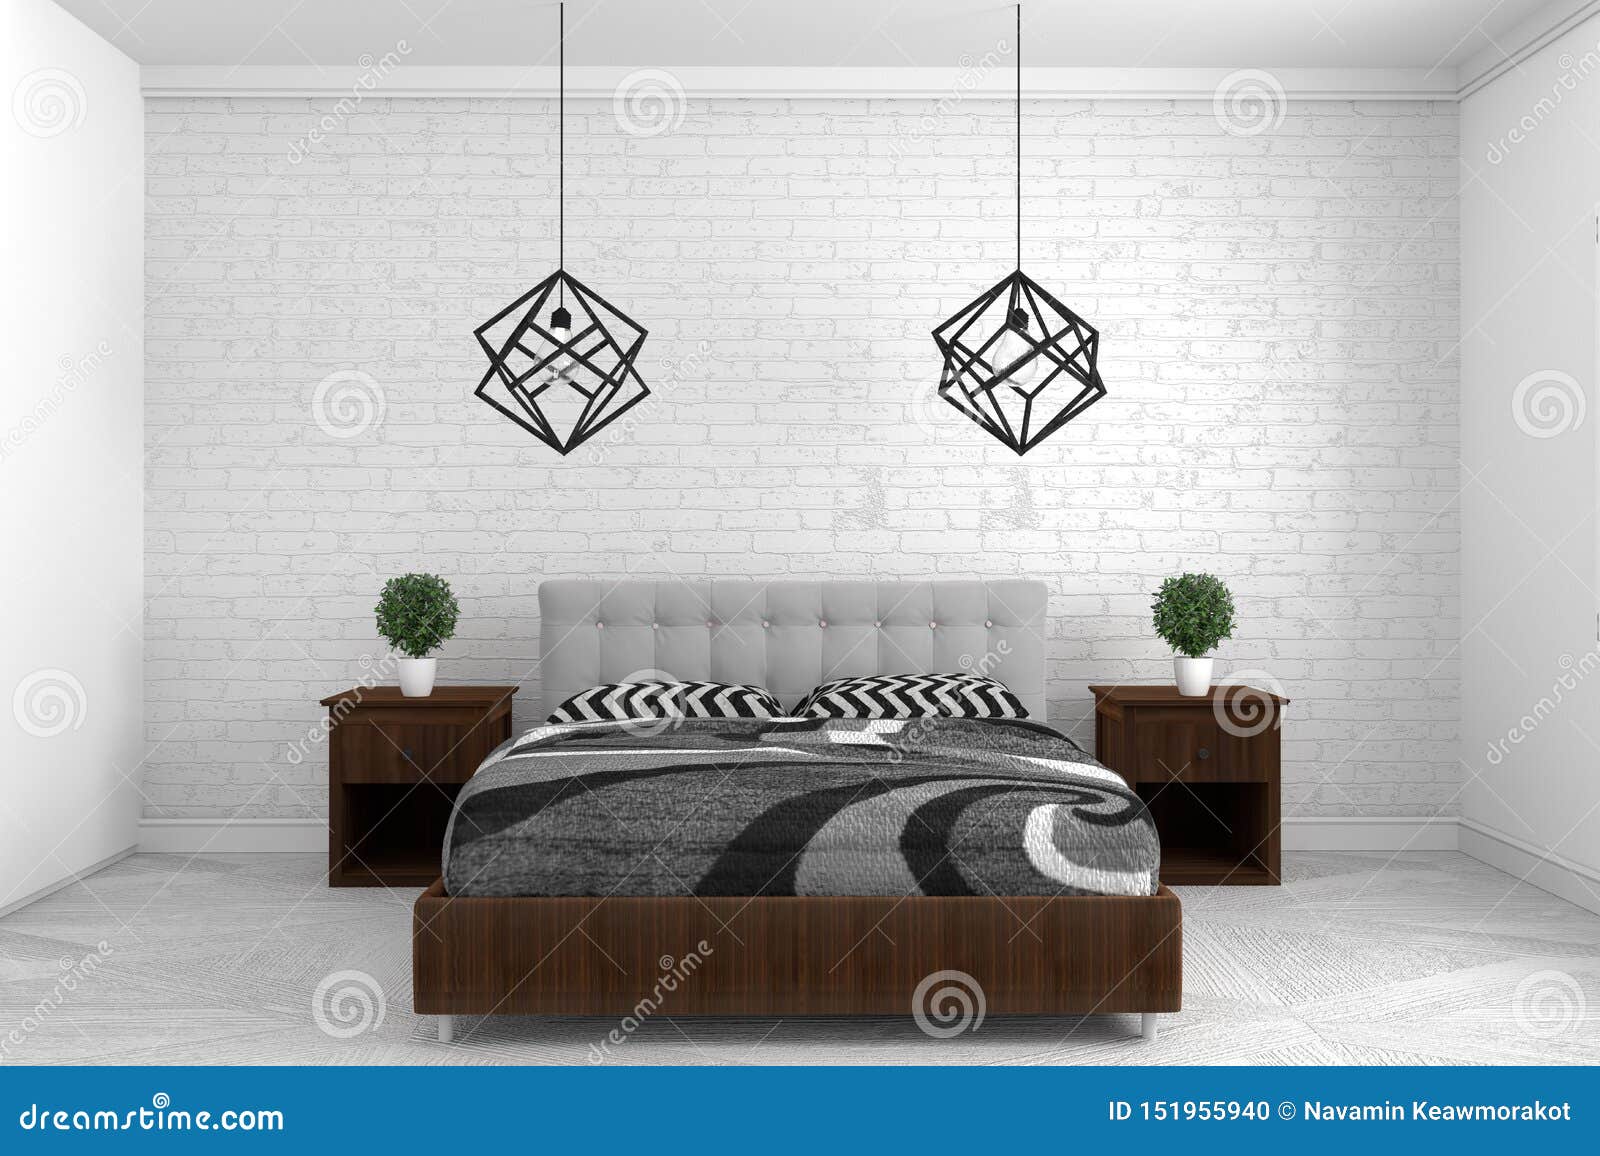 Không gian phòng ngủ đẹp trên sàn nhà trắng tạo cảm giác tươi mới, đầy sức sống. Với thiết kế nội thất hiện đại, đơn giản nhưng tinh tế, không gian trở nên tràn đầy sự ấm cúng, thuận tiện và thoải mái. Mỗi lần bước vào phòng ngủ, bạn sẽ cảm thấy cảm xúc an nhiên, thư giãn. 